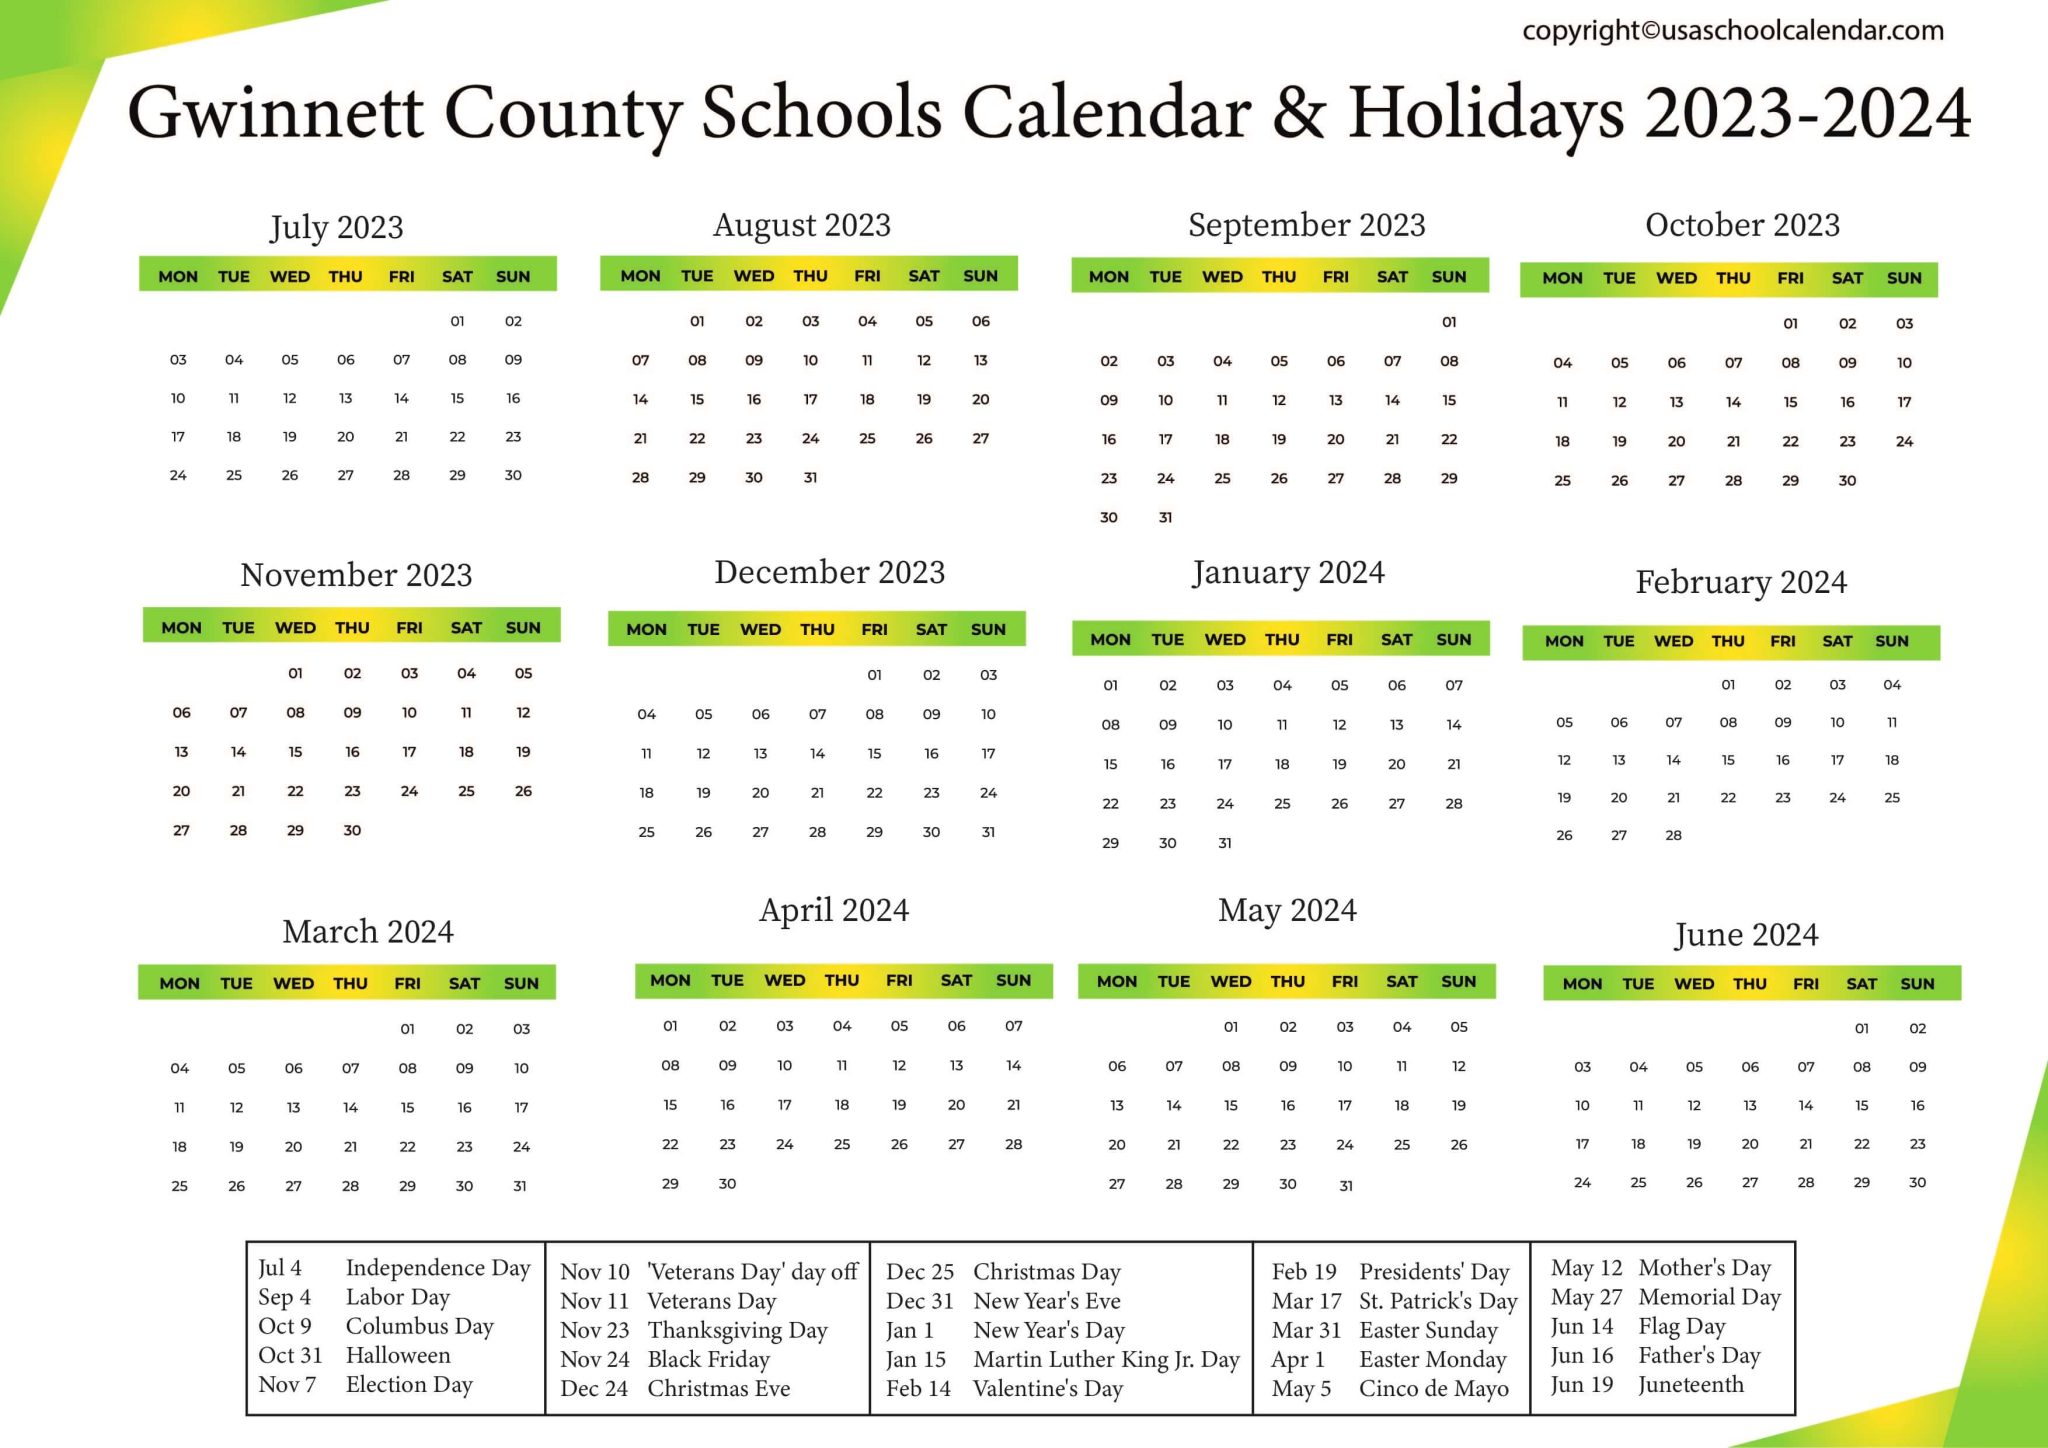 Gwinnett County Schools Calendar Holidays 2023 2024 2048x1448 